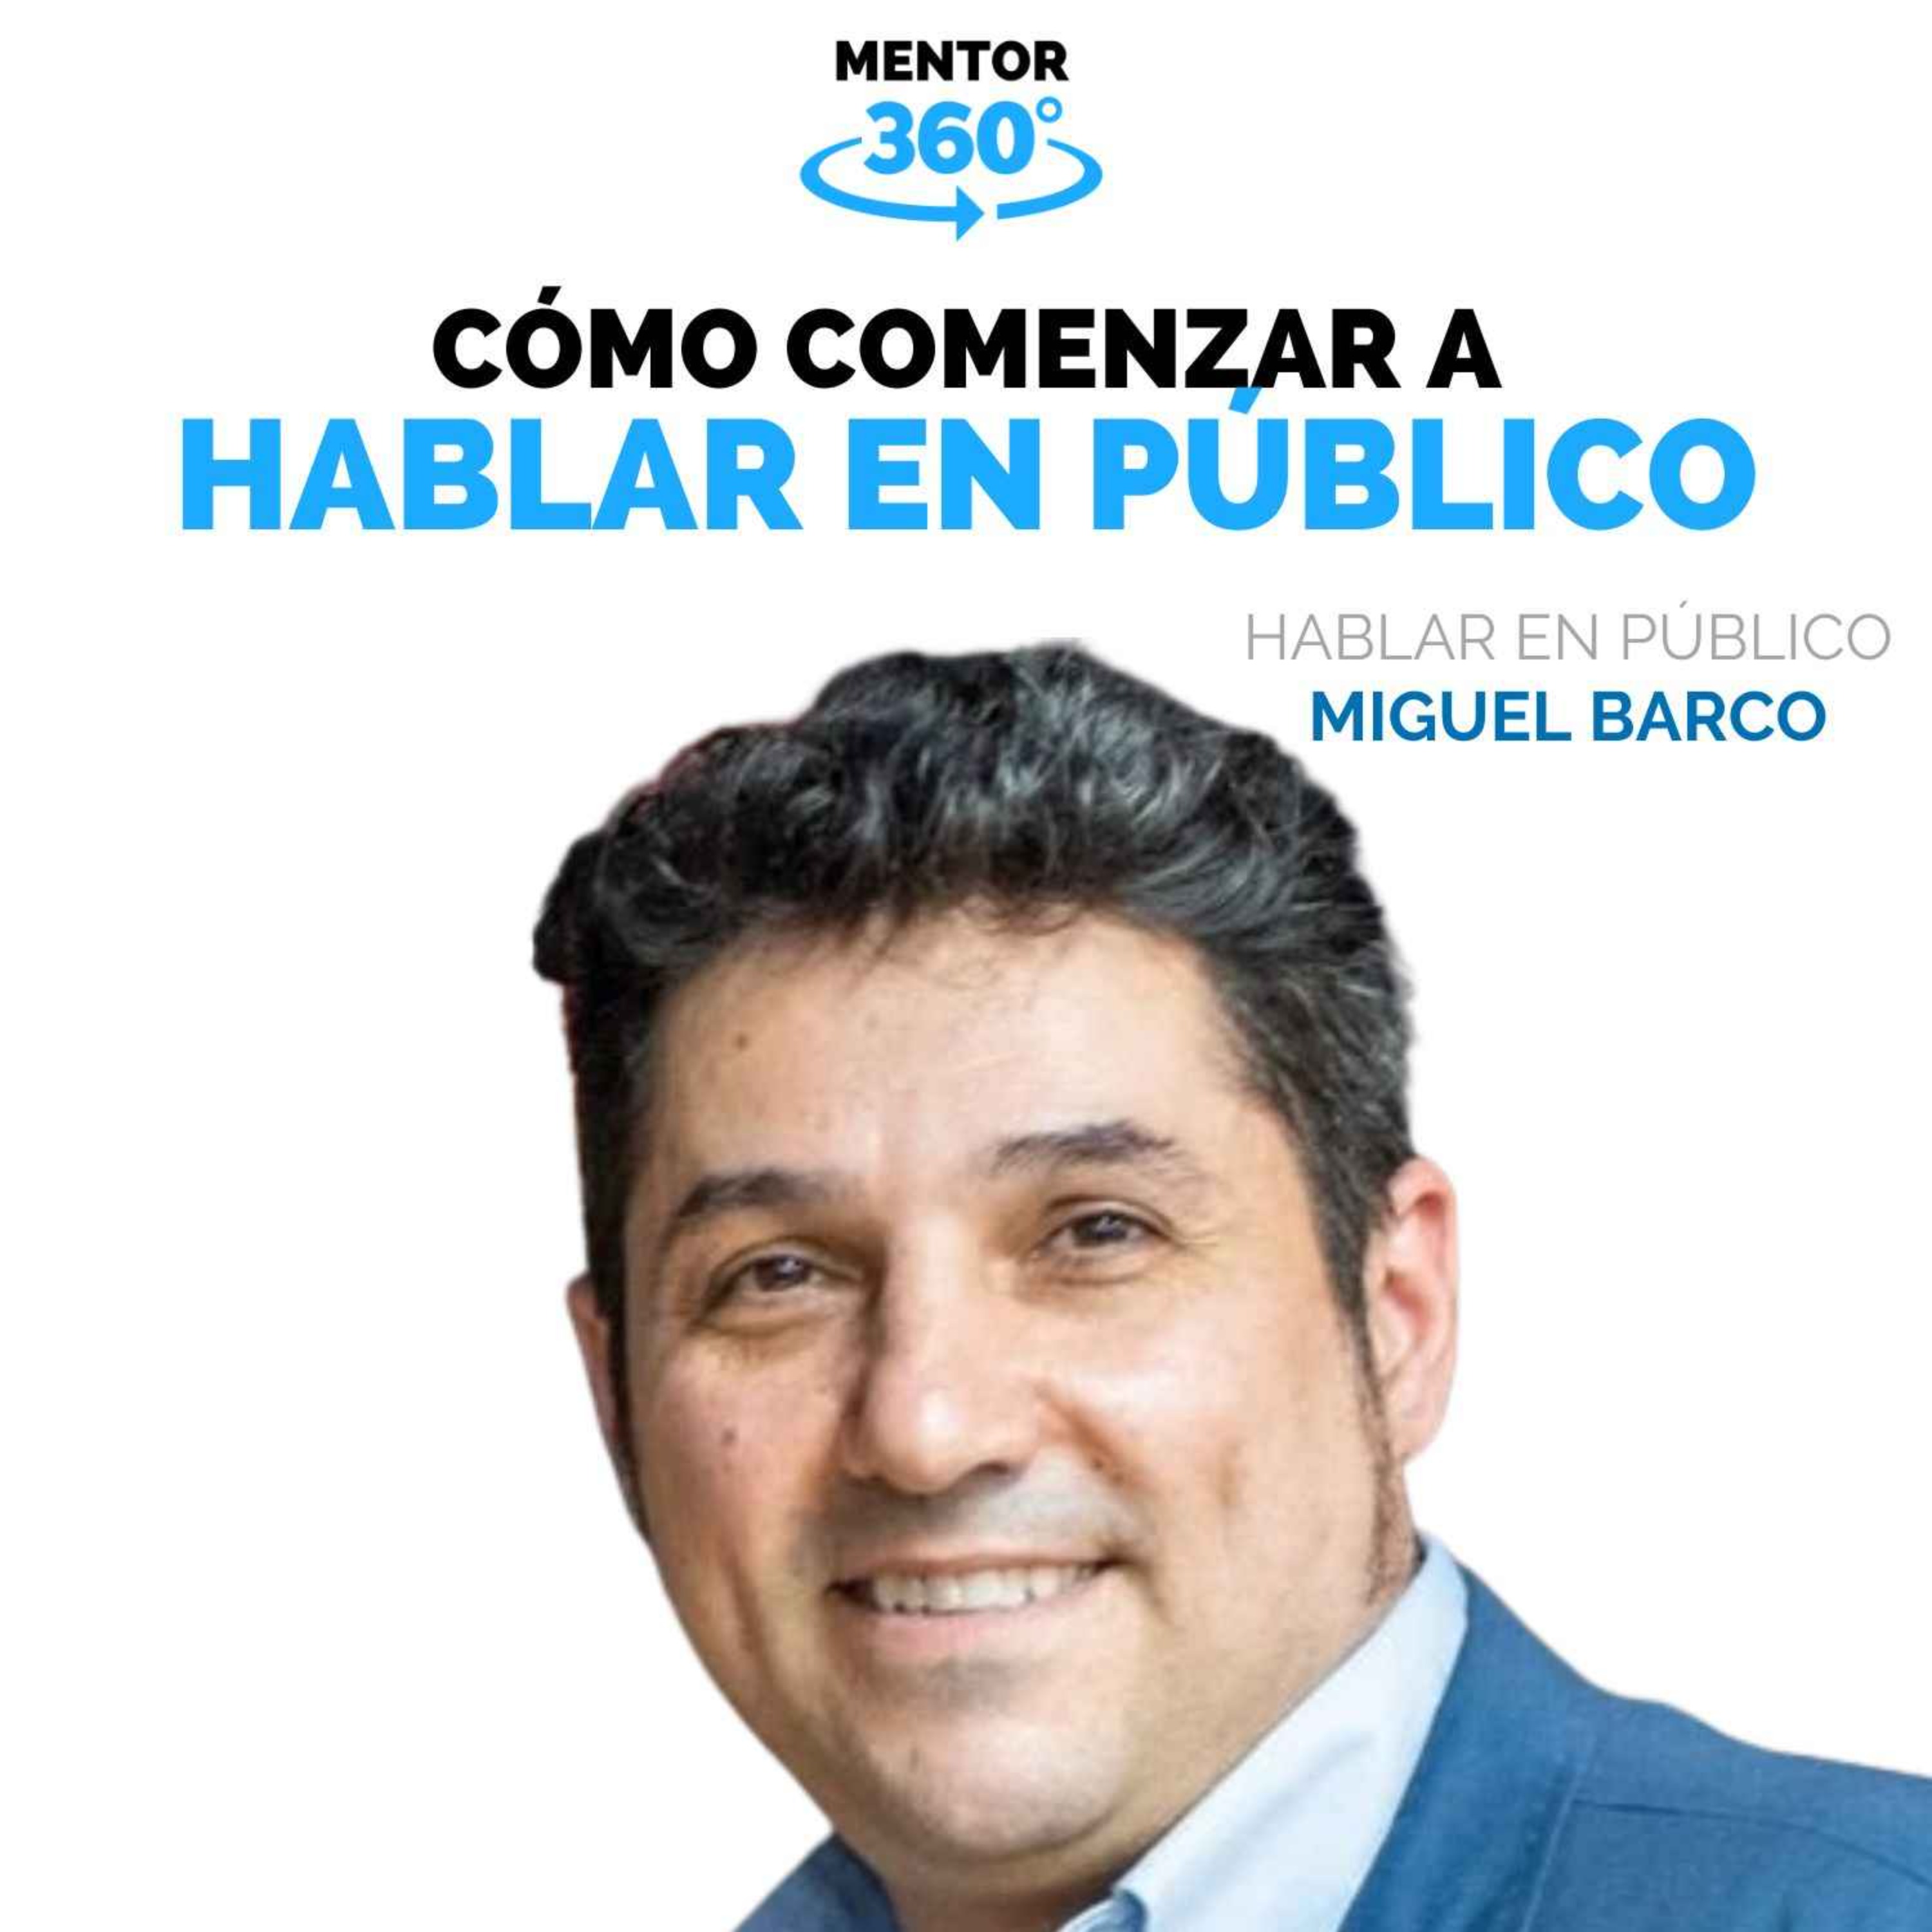 Cómo Comenzar a Hablar en Público - Miguel Barco - Hablar en Público - MENTOR360